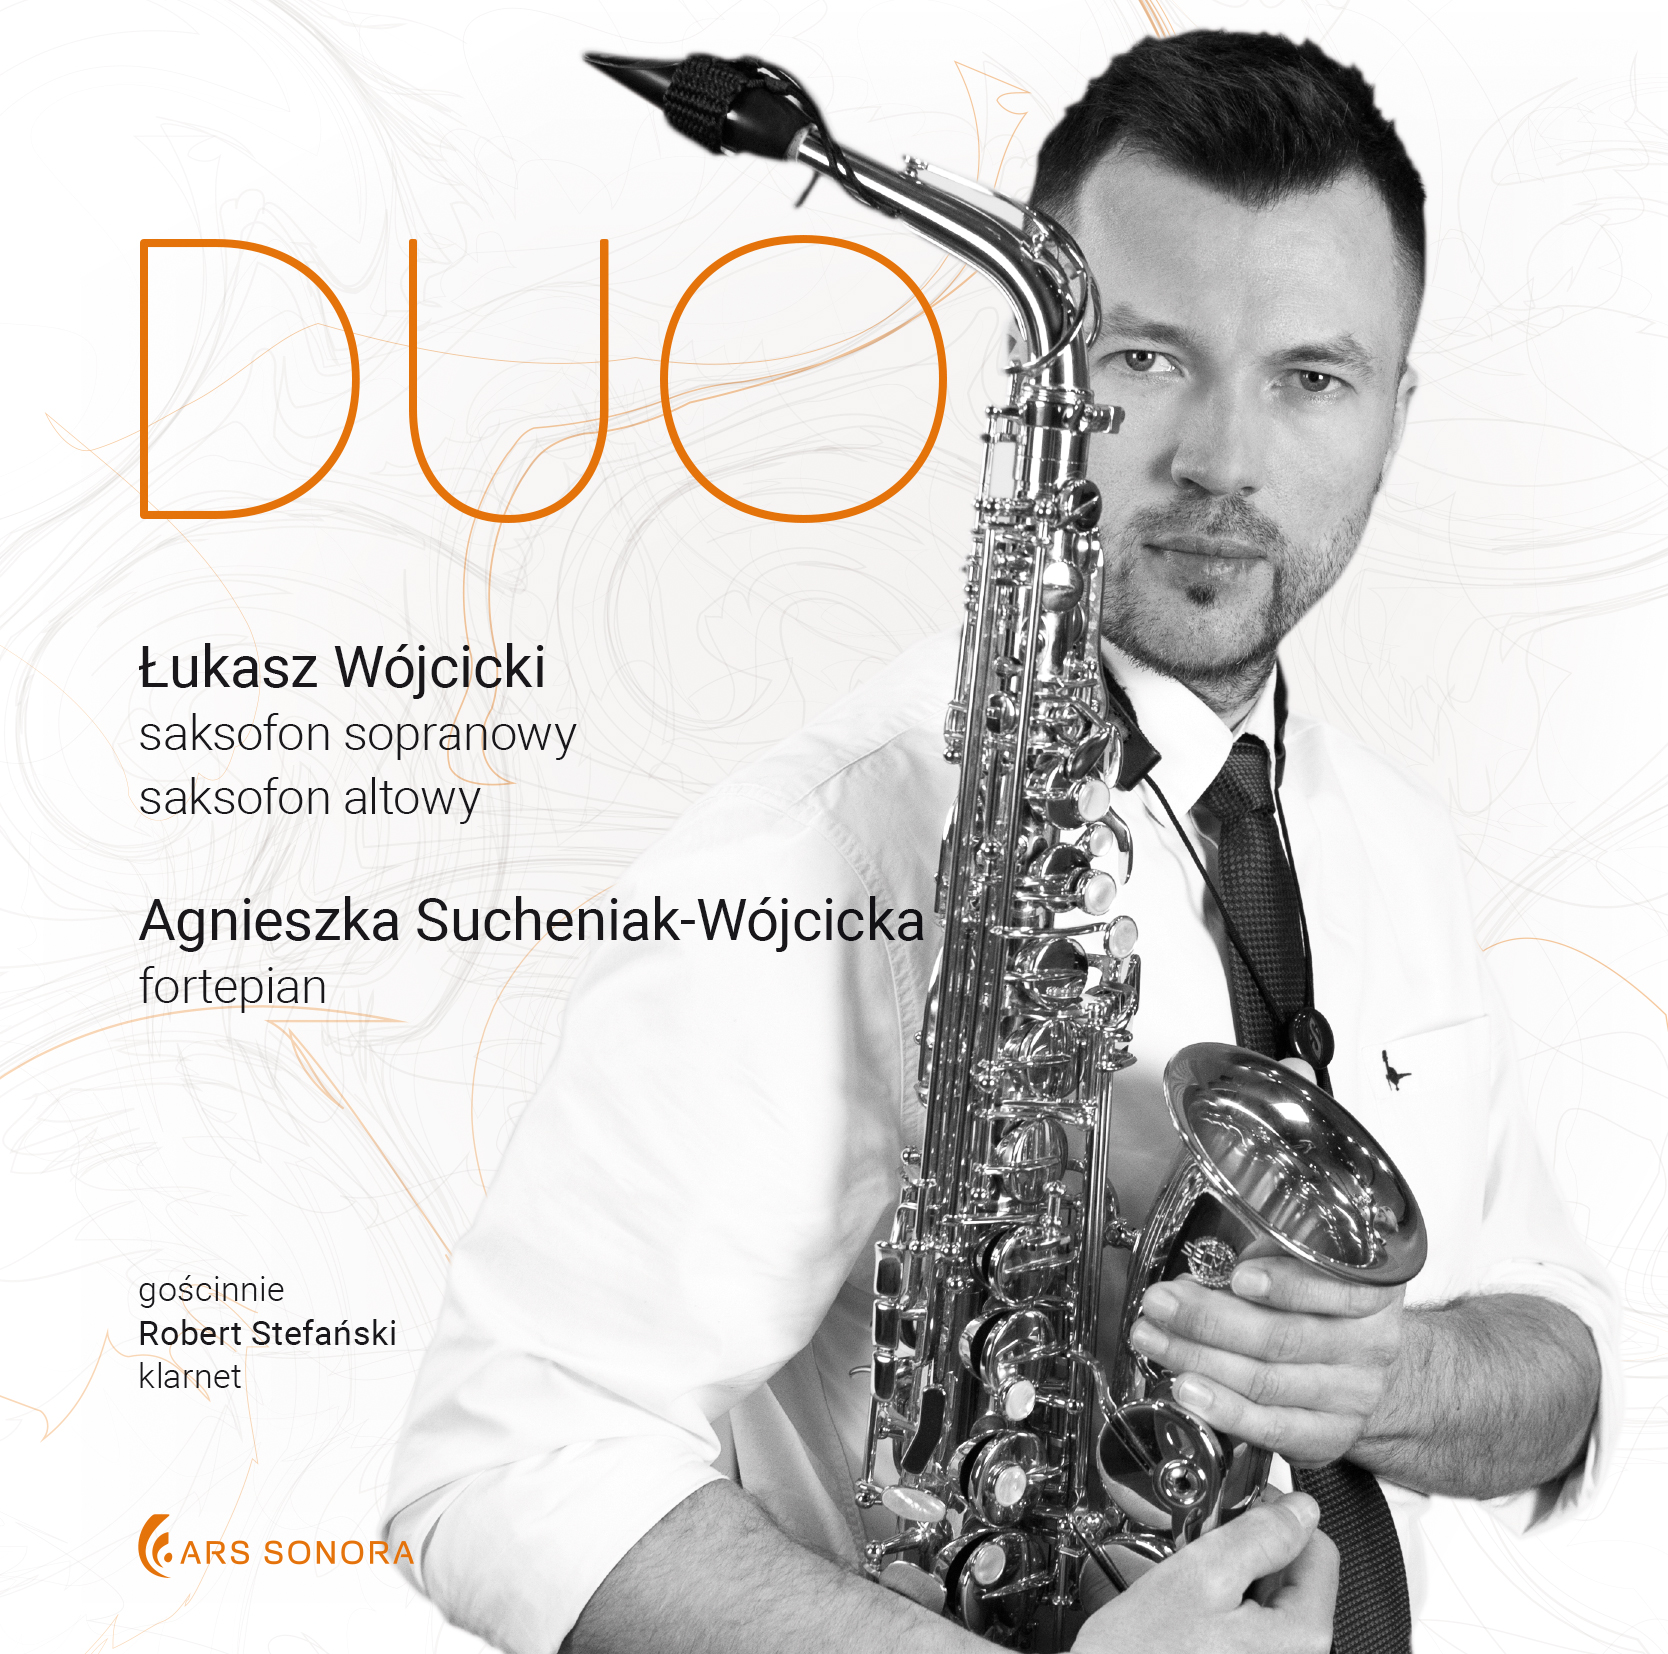 Łukasz Wójcicki – Duo